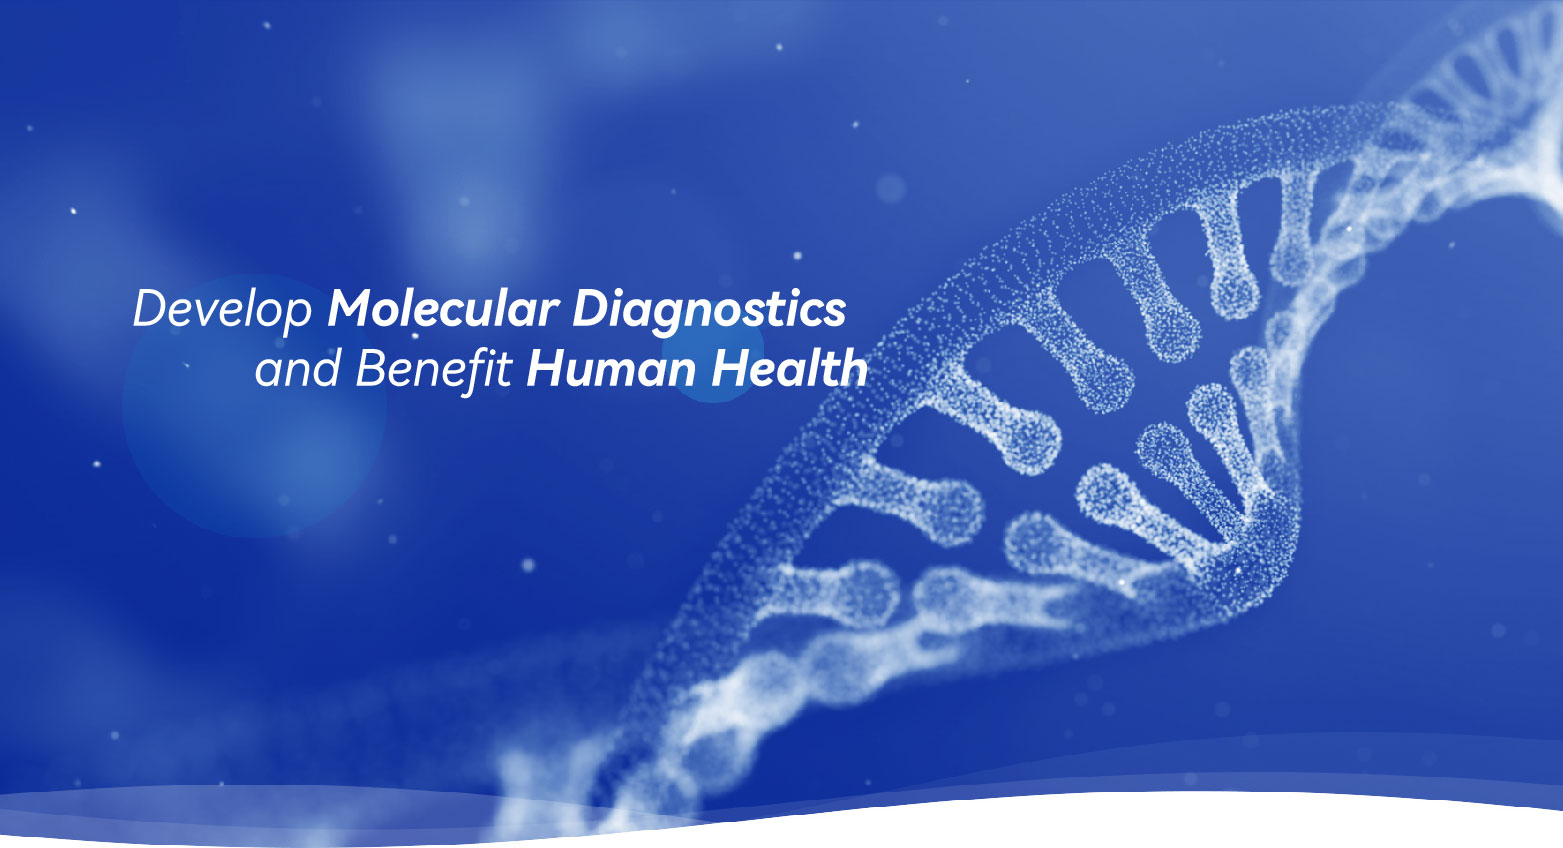 Develop Molecular Diagnostics and Benefit Human Health 2